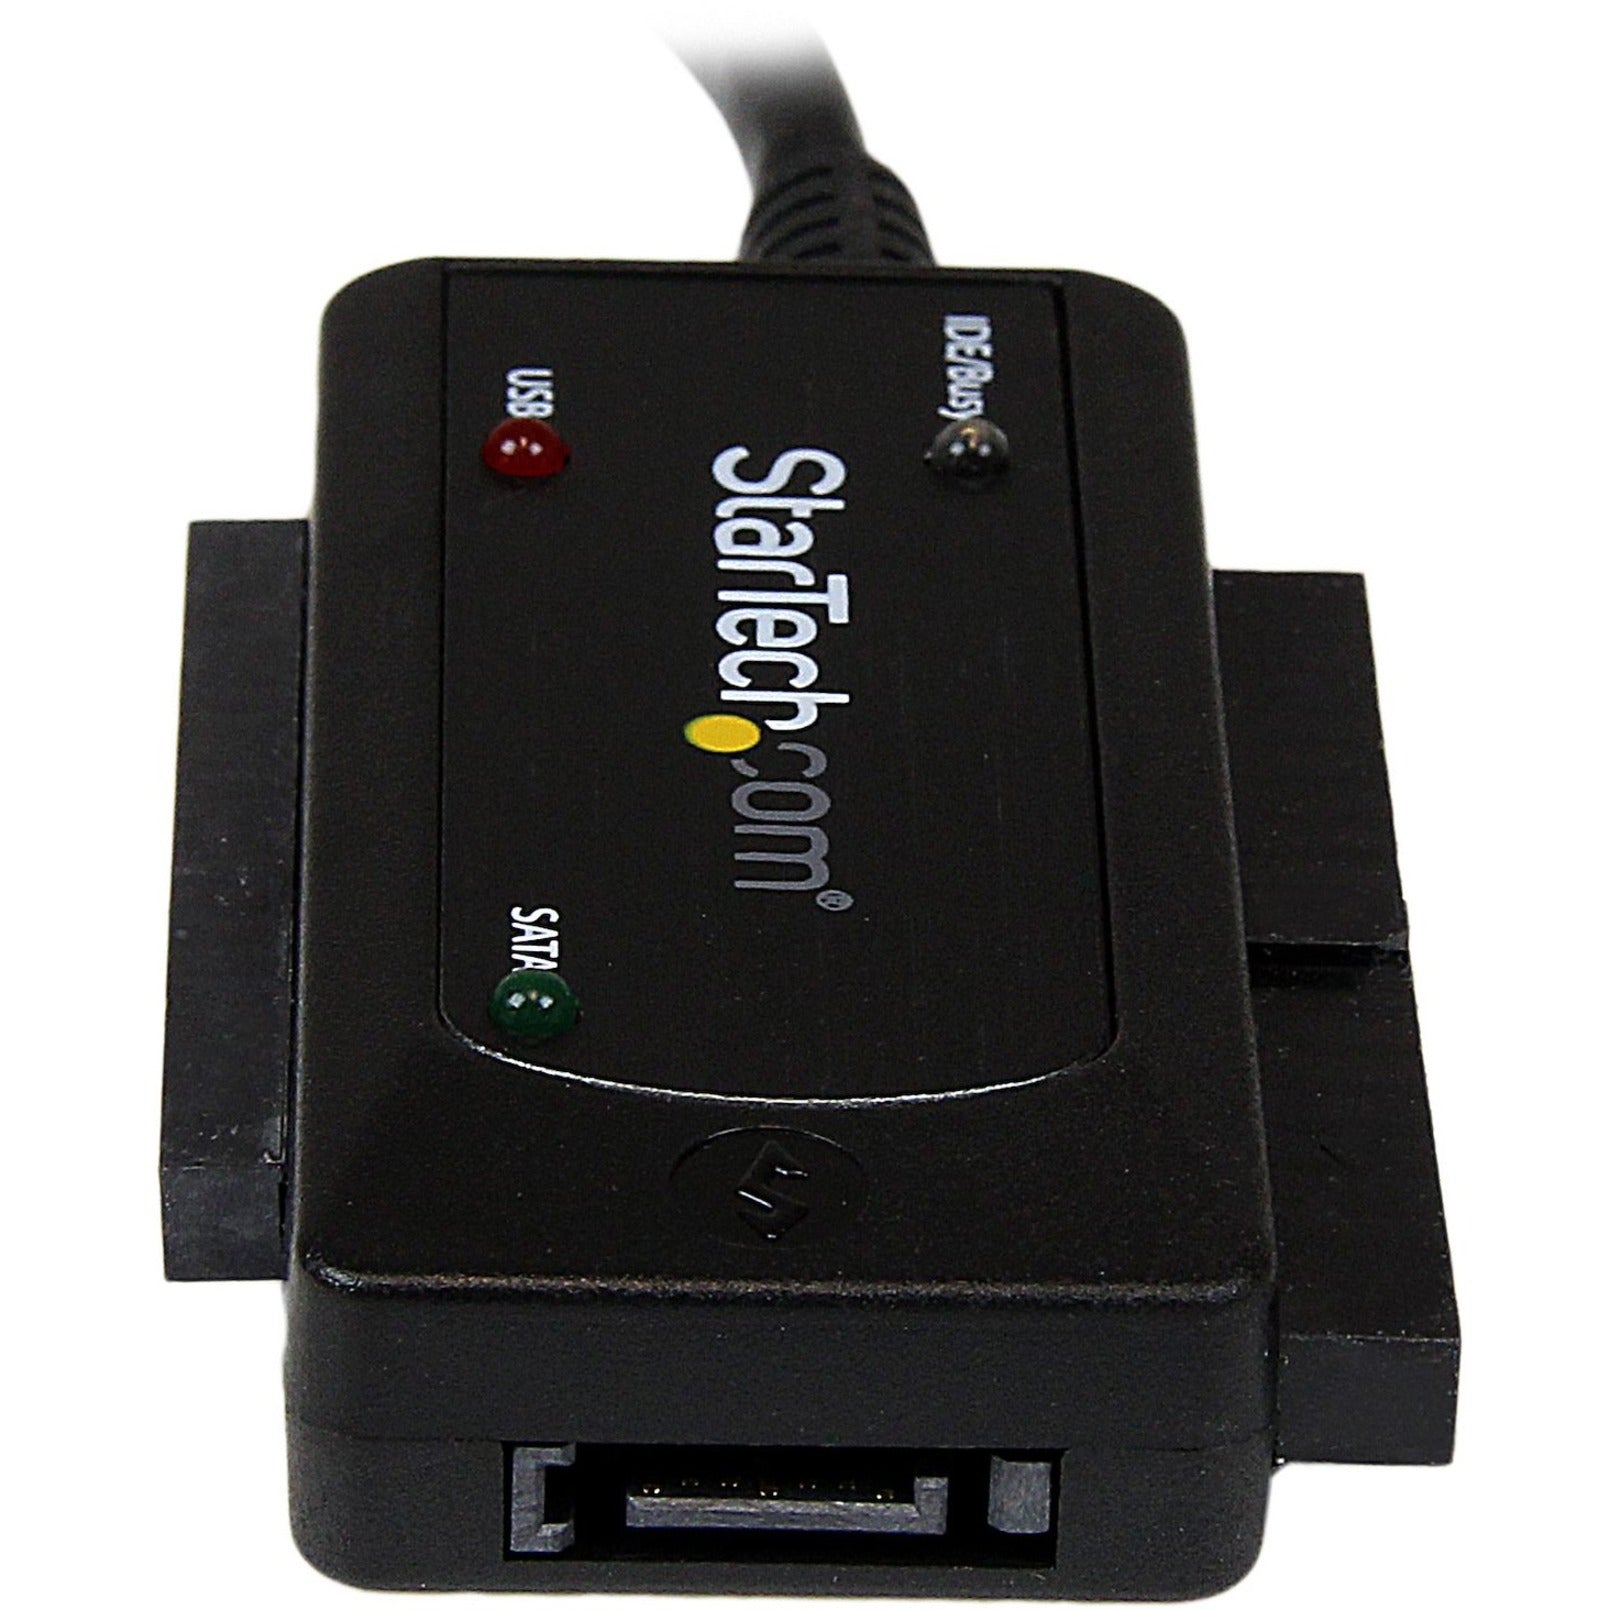 StarTech.com USB3SSATAIDE USB 3.0 zu SATA oder IDE Festplattenadapter Konverter Datentransfer mit hoher Geschwindigkeit